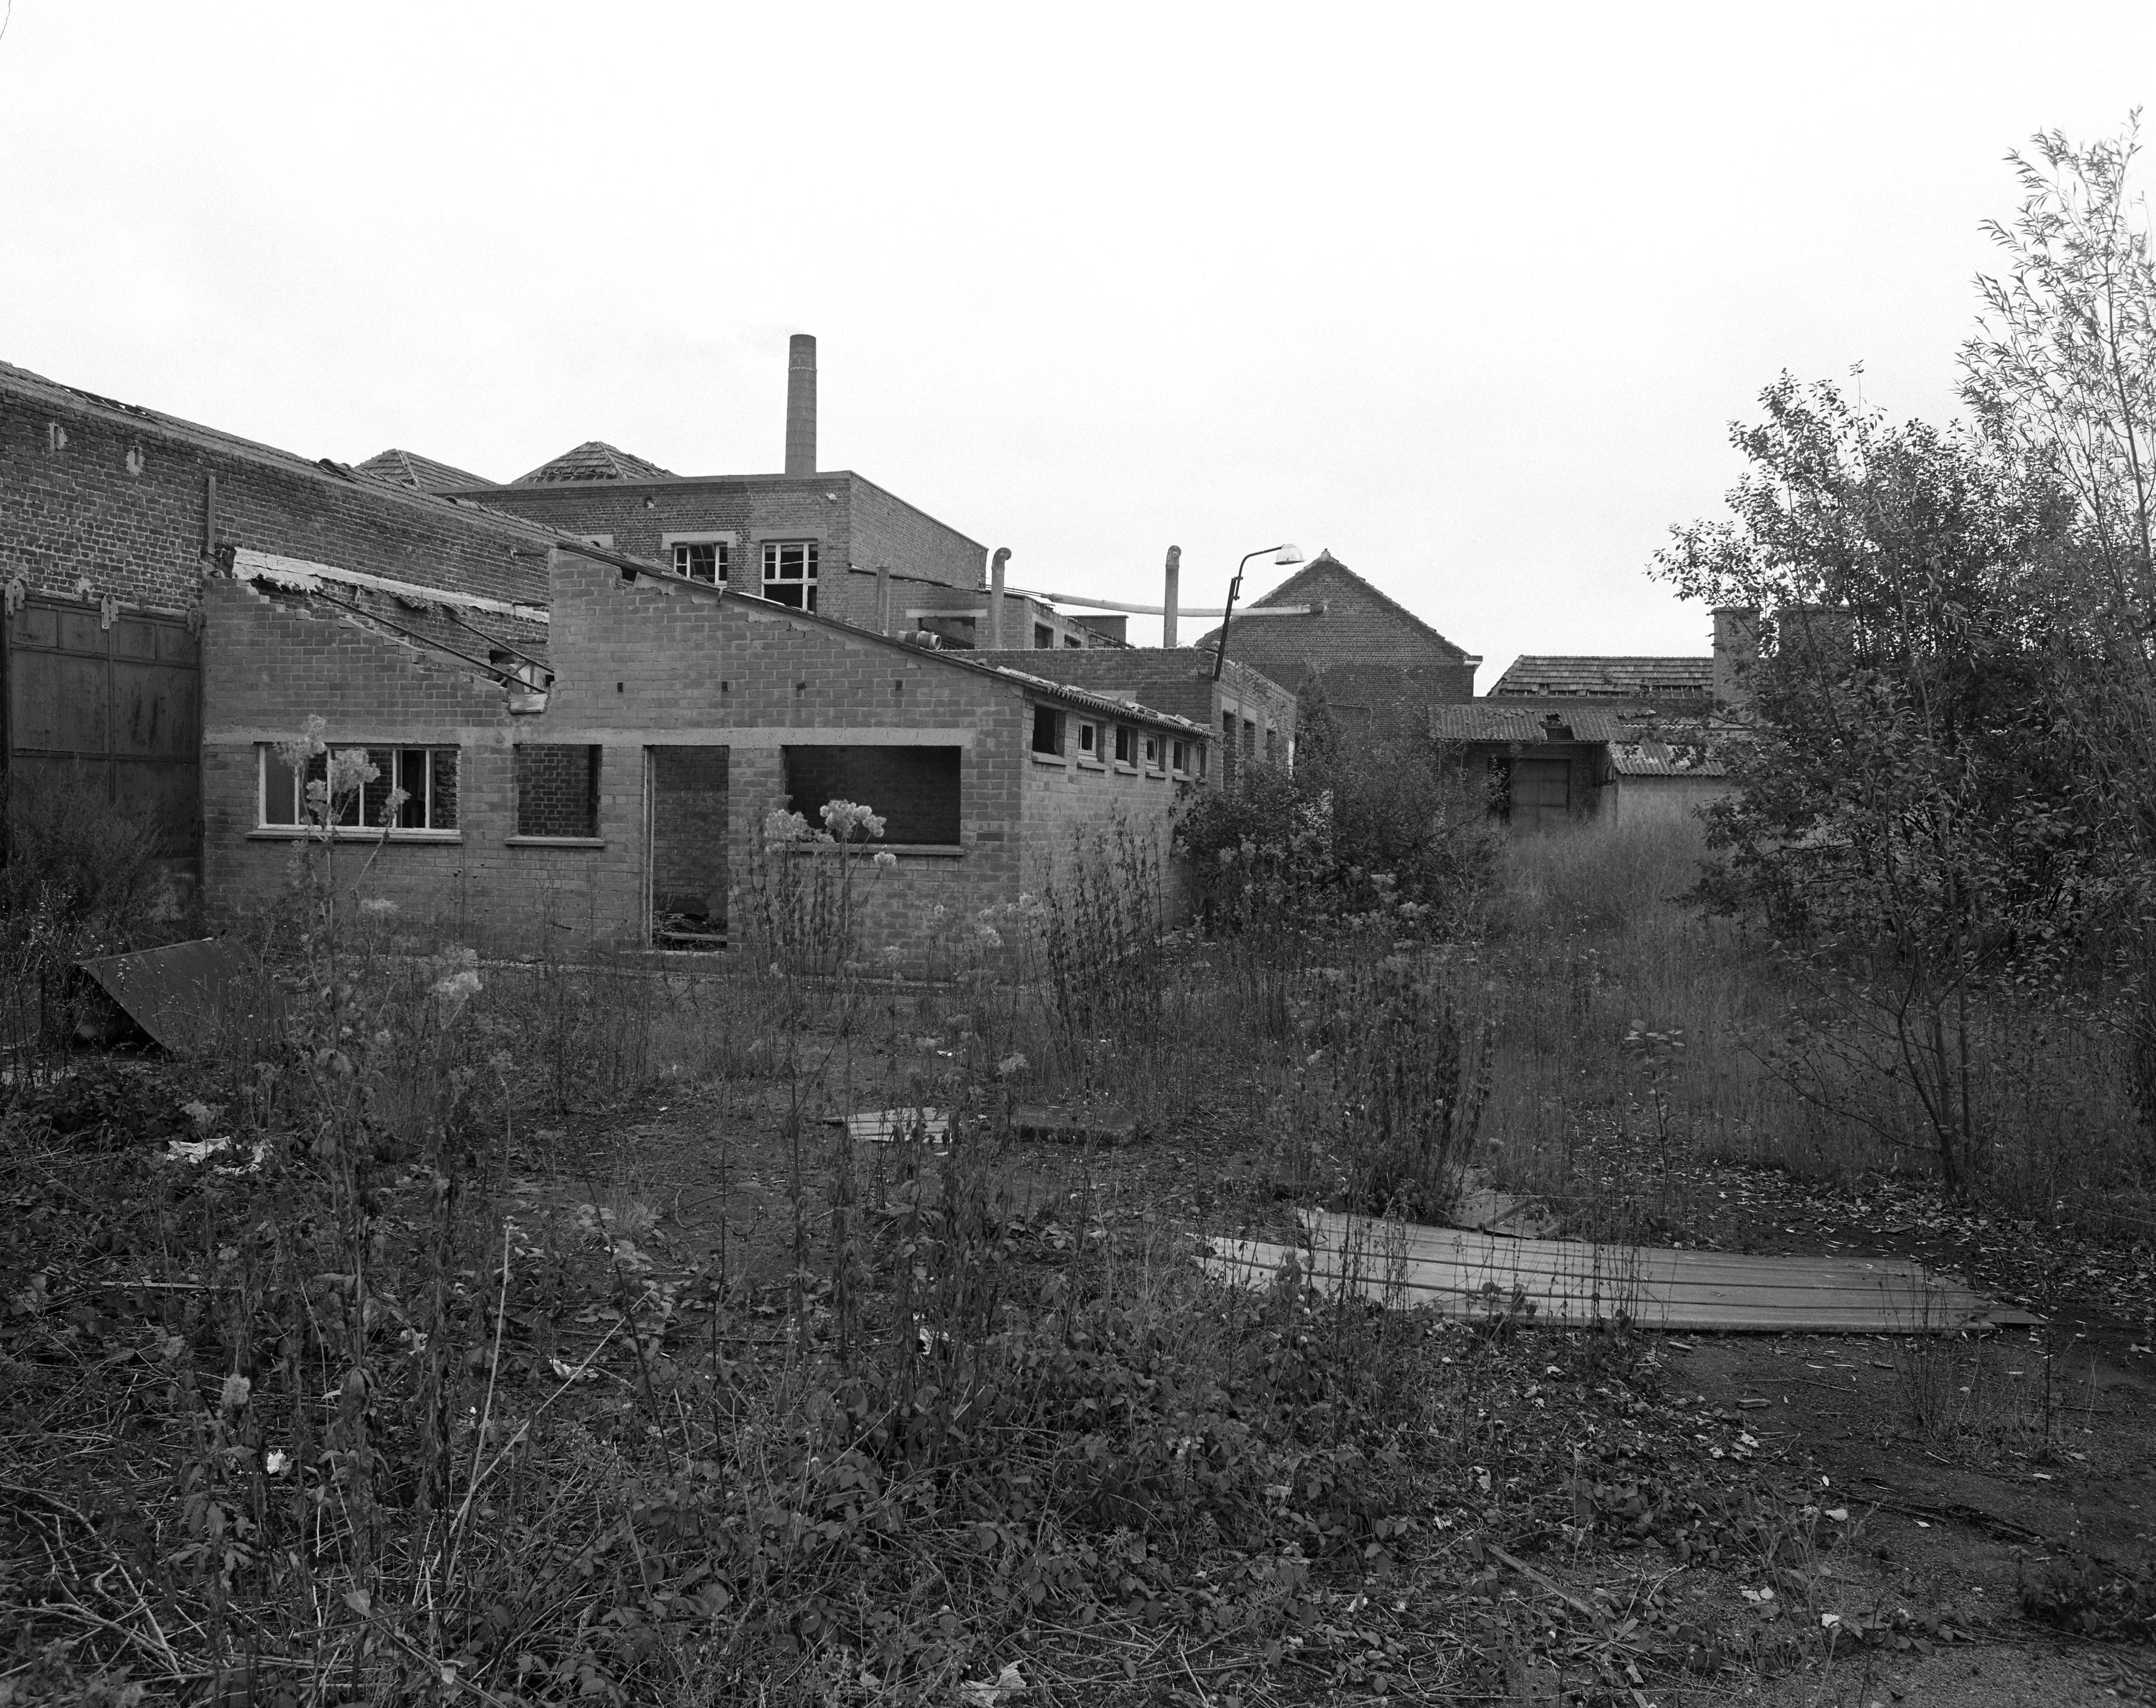 Tissage Ruyant-Carpentier, puis Ruyant-Carpentier-Gruson, puis Ruyant et Debosque, puis Ruyant-Steverlinck-Masurel, puis usine de matériel d'équipement industriel Pouillé (détruit)